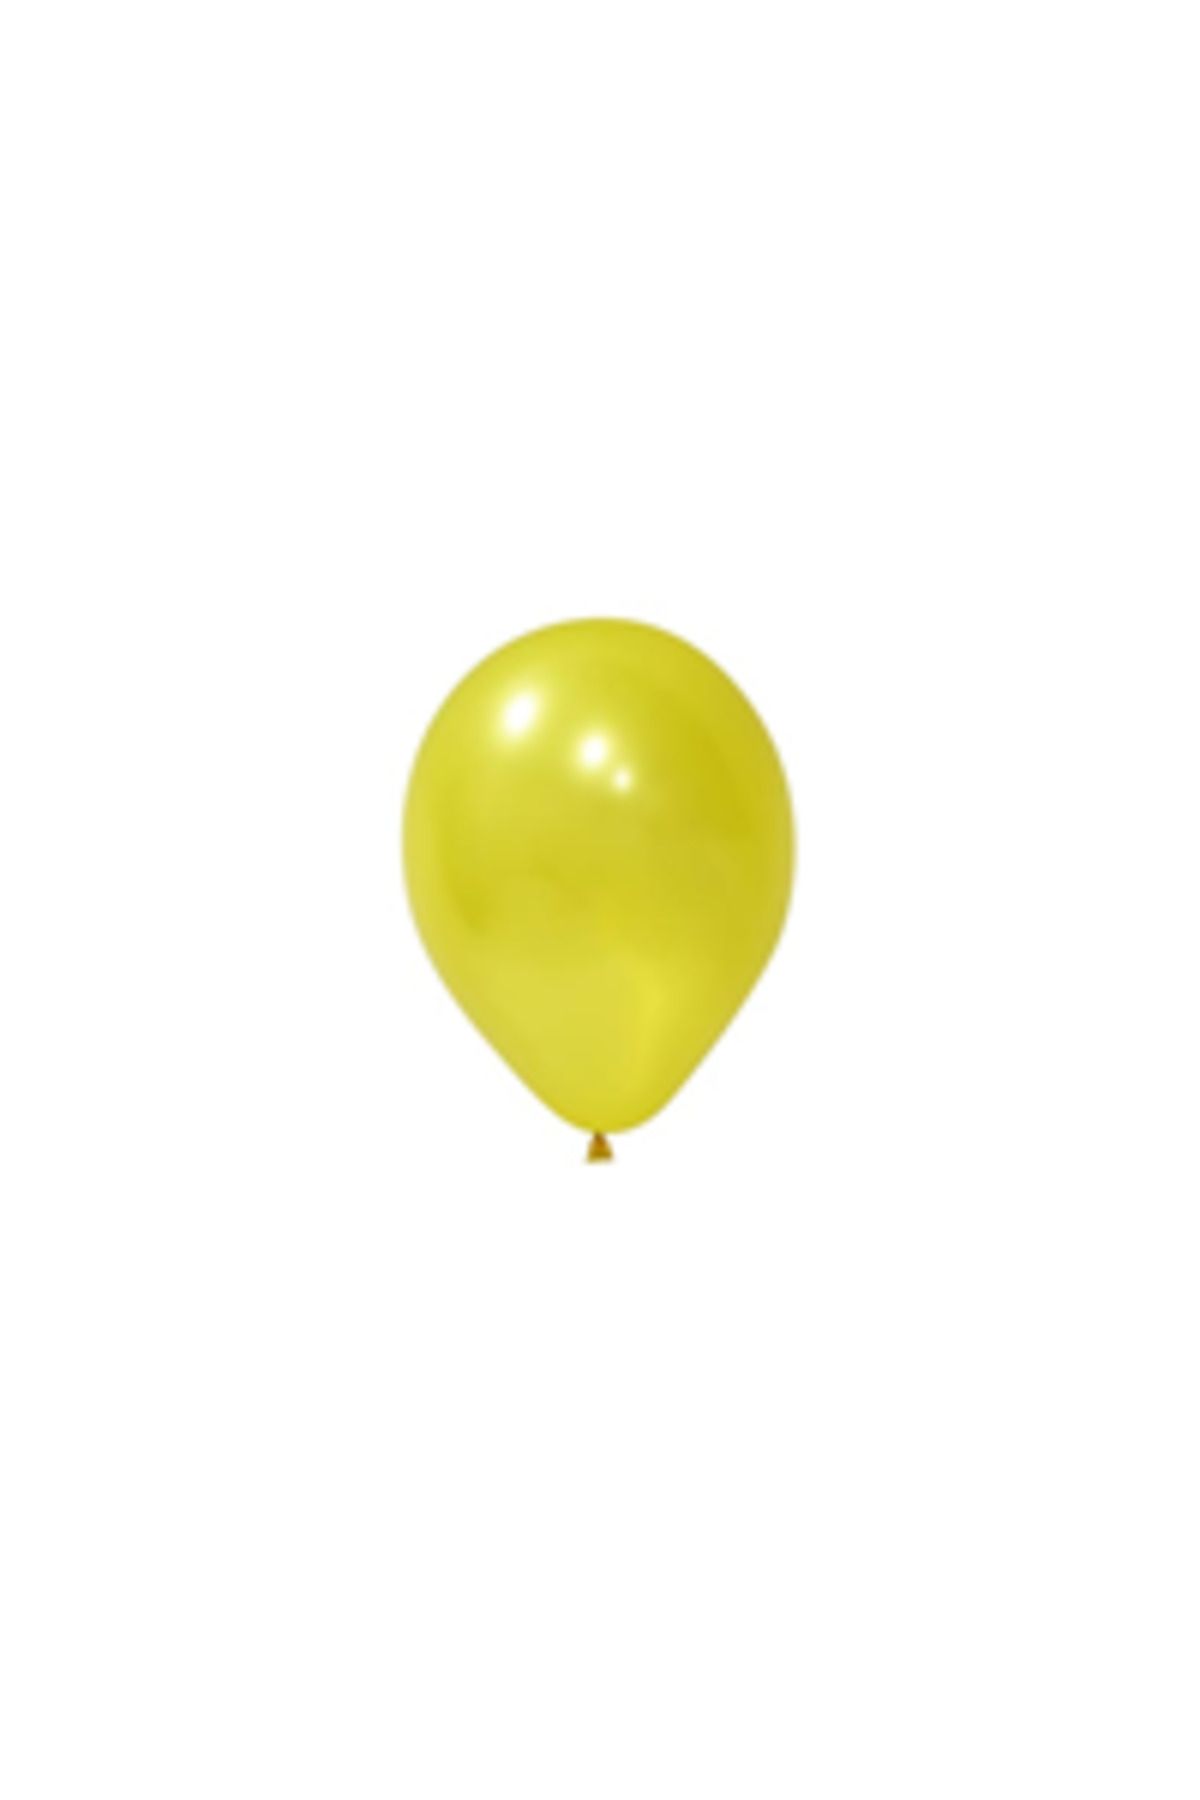 eğlencemarketi 12 Inç Standart Boy Metalik Balon Sarı 100 Adet